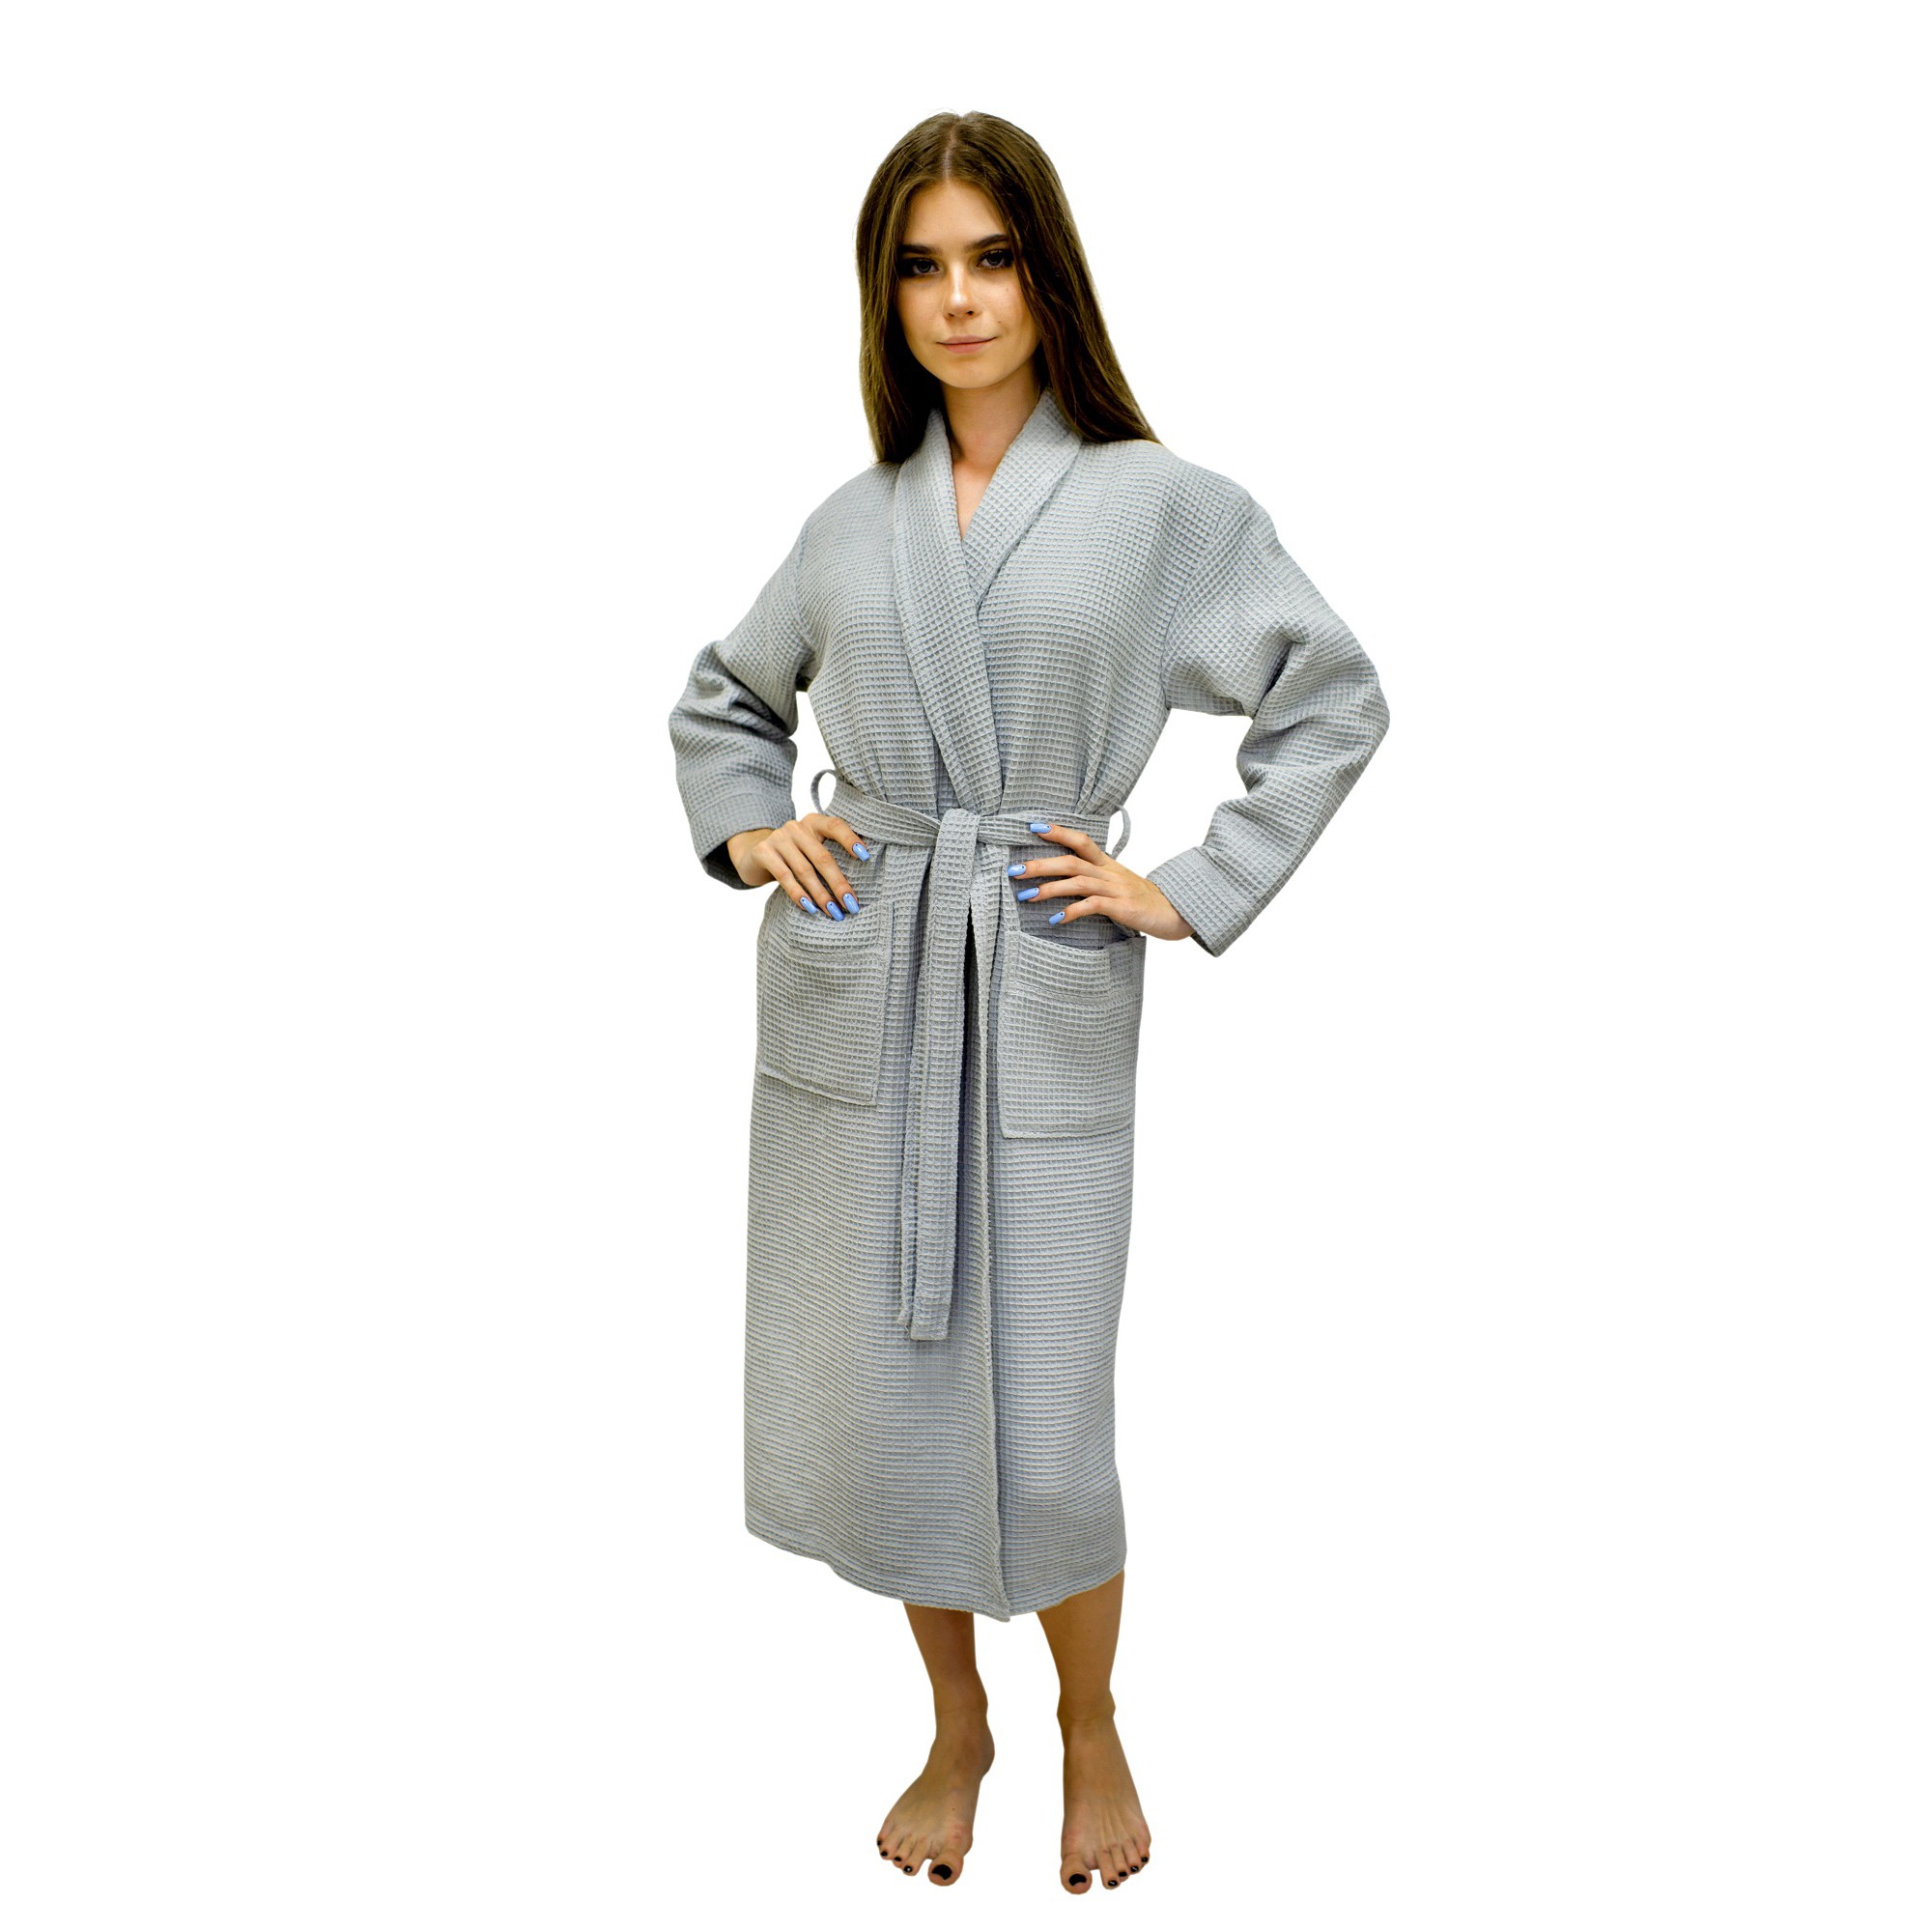 Банный халат Блюми цвет: серый (M), размер M nus905916 Банный халат Блюми цвет: серый (M) - фото 1